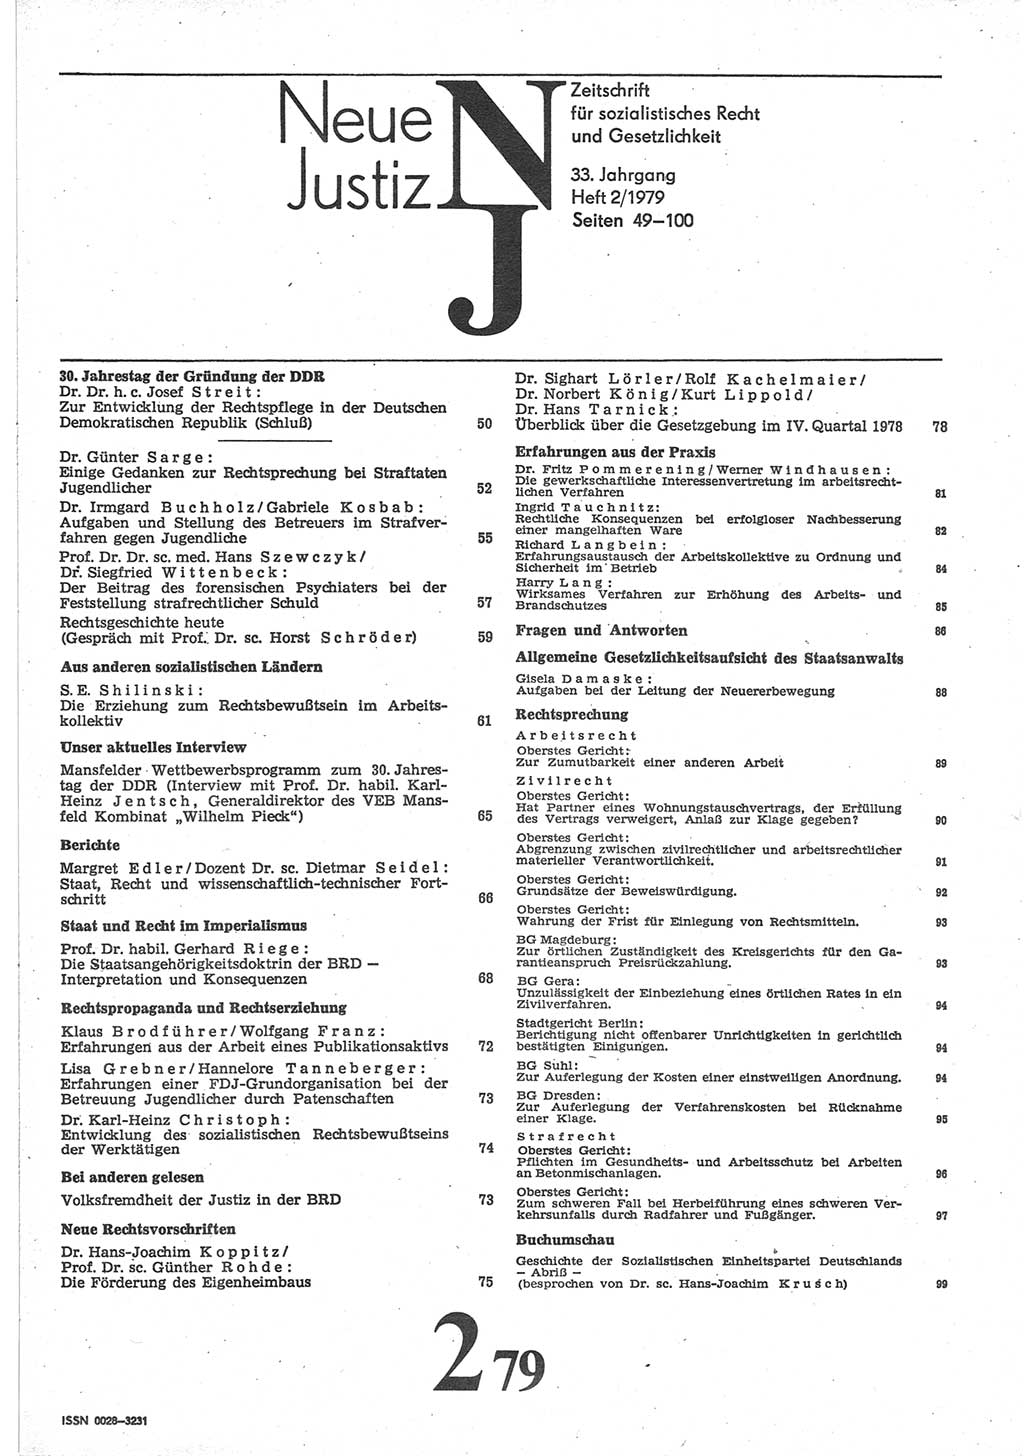 Neue Justiz (NJ), Zeitschrift für sozialistisches Recht und Gesetzlichkeit [Deutsche Demokratische Republik (DDR)], 33. Jahrgang 1979, Seite 49 (NJ DDR 1979, S. 49)